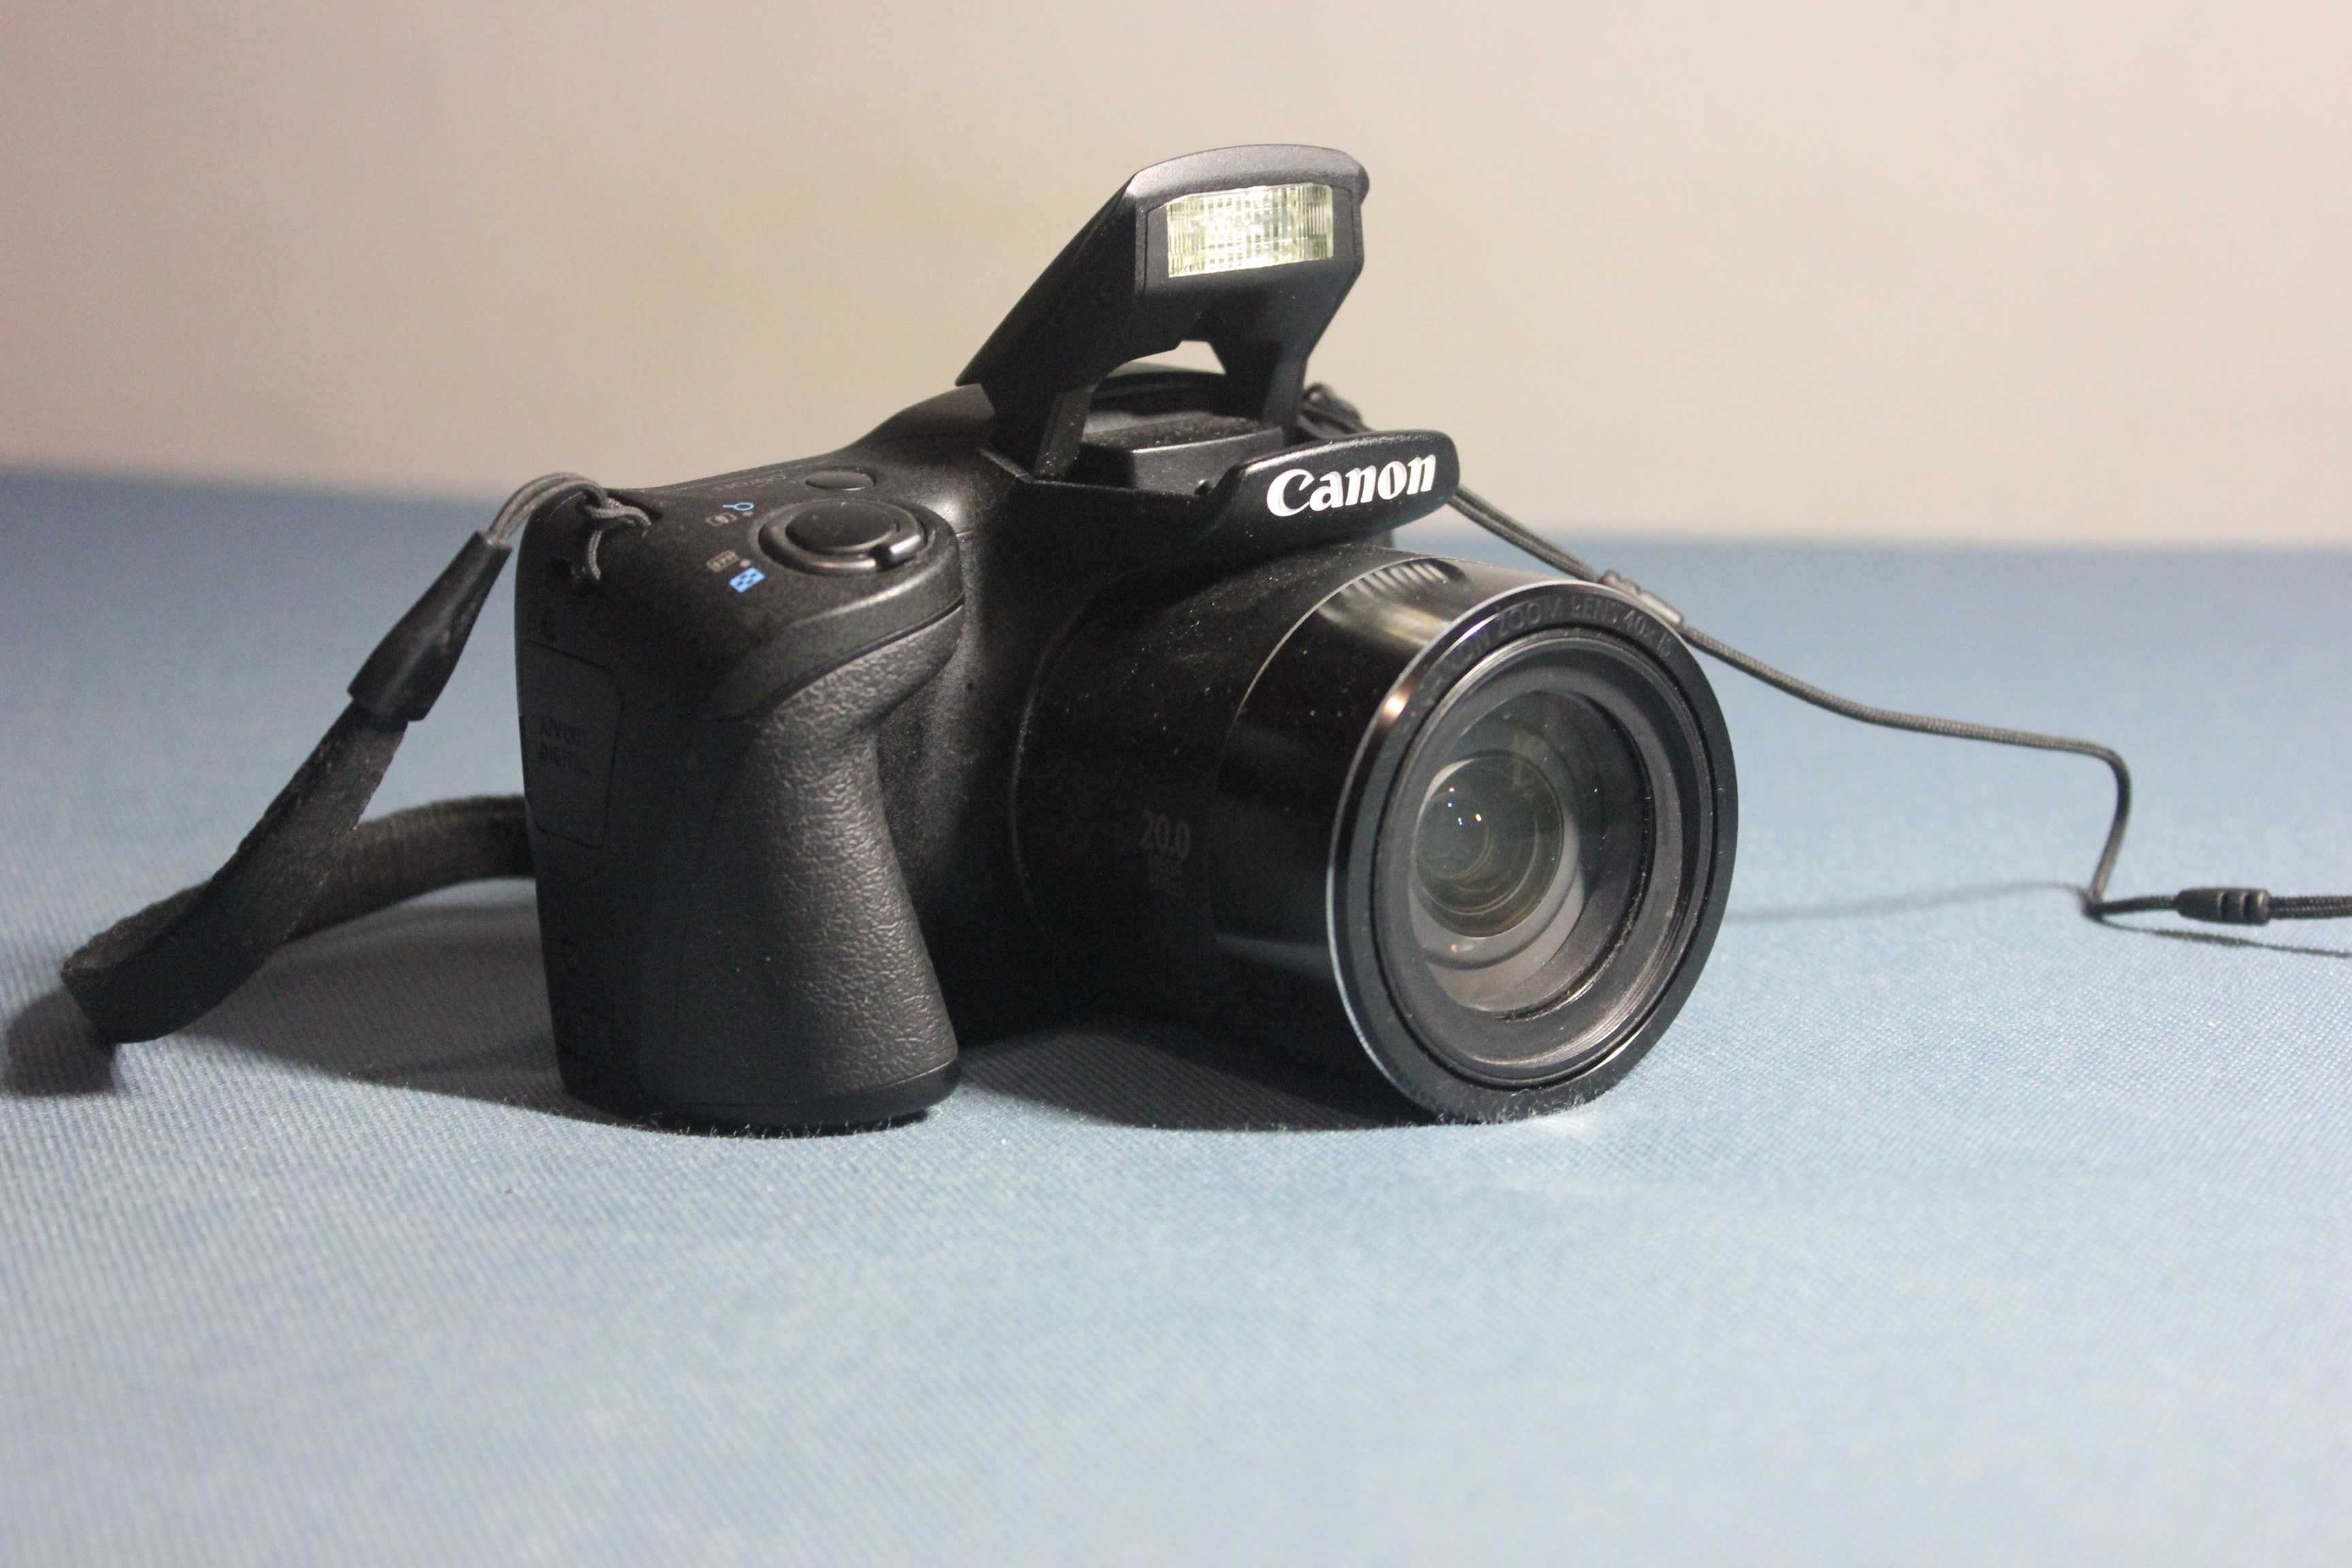 Aparat Canon Power Shot SX410 IS + pokrowiec i karta pamięci